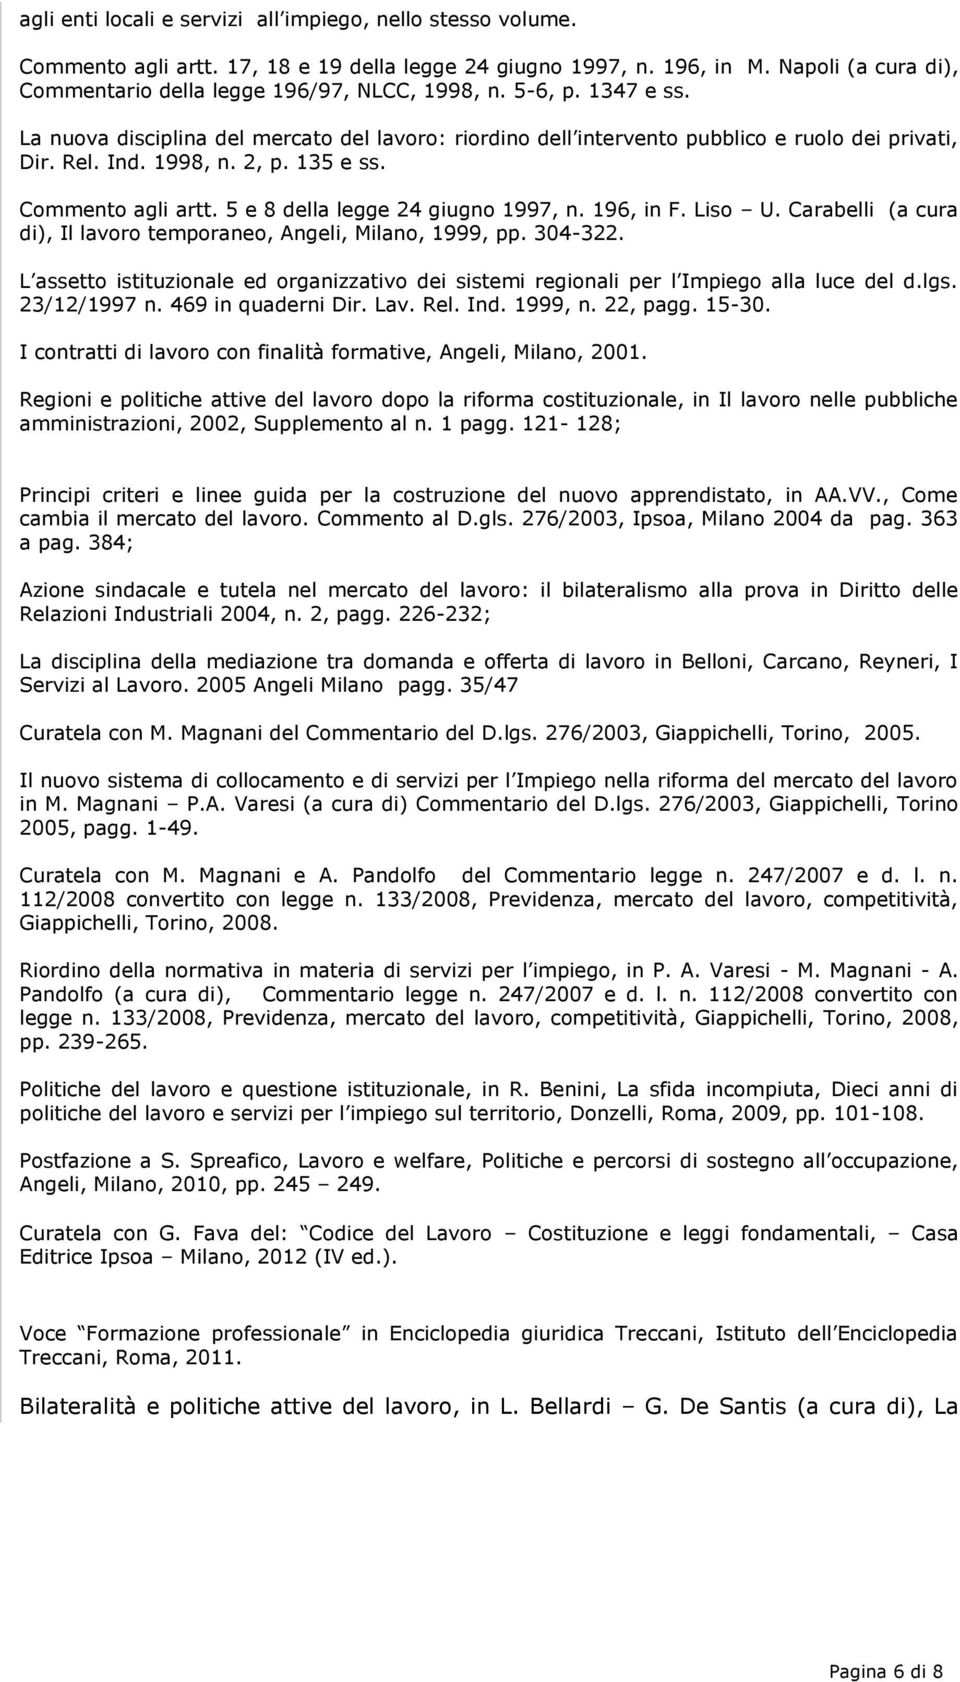 1998, n. 2, p. 135 e ss. Commento agli artt. 5 e 8 della legge 24 giugno 1997, n. 196, in F. Liso U. Carabelli (a cura di), Il lavoro temporaneo, Angeli, Milano, 1999, pp. 304-322.